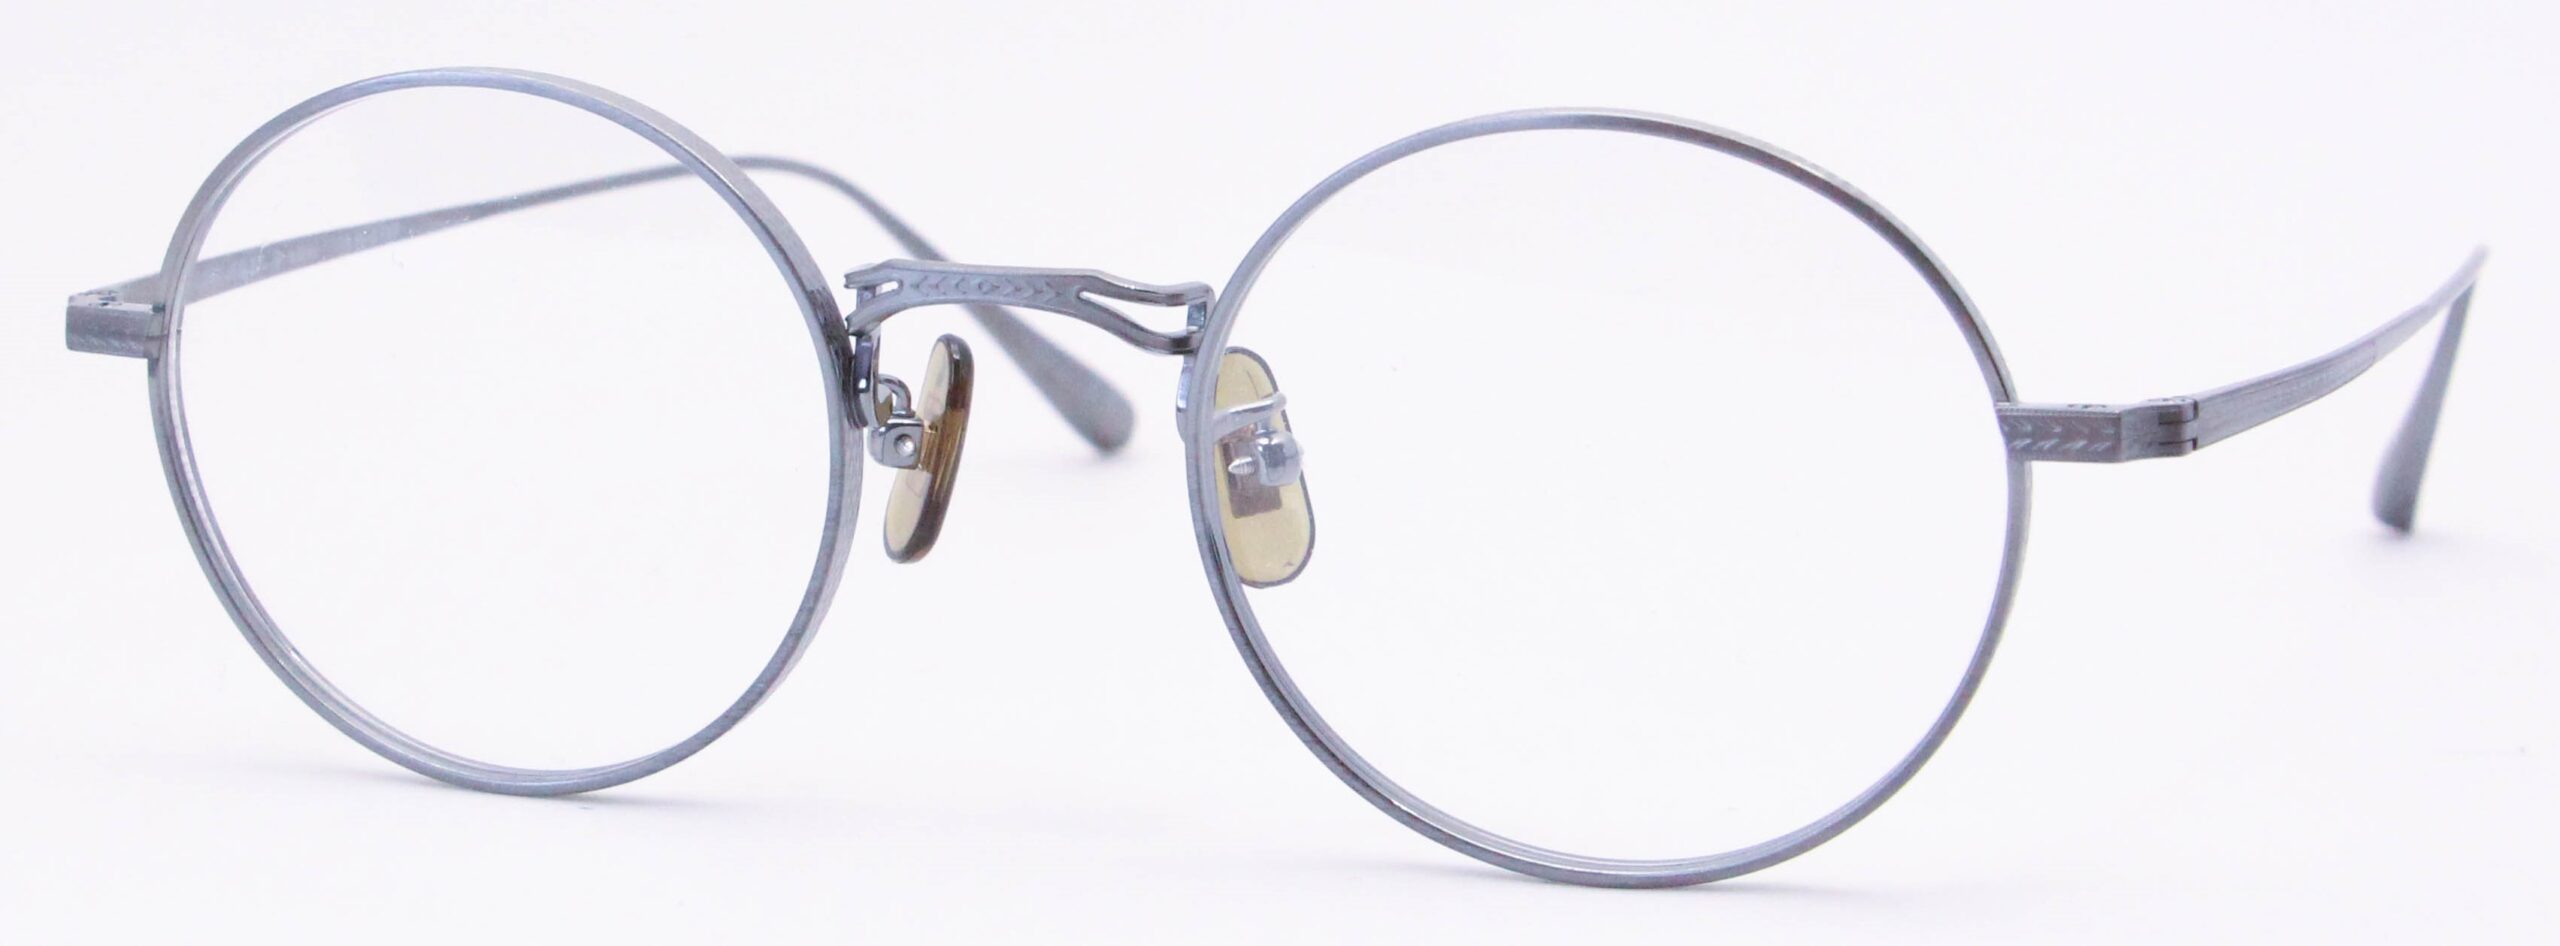 眼鏡のカラータイプC-7 Gray